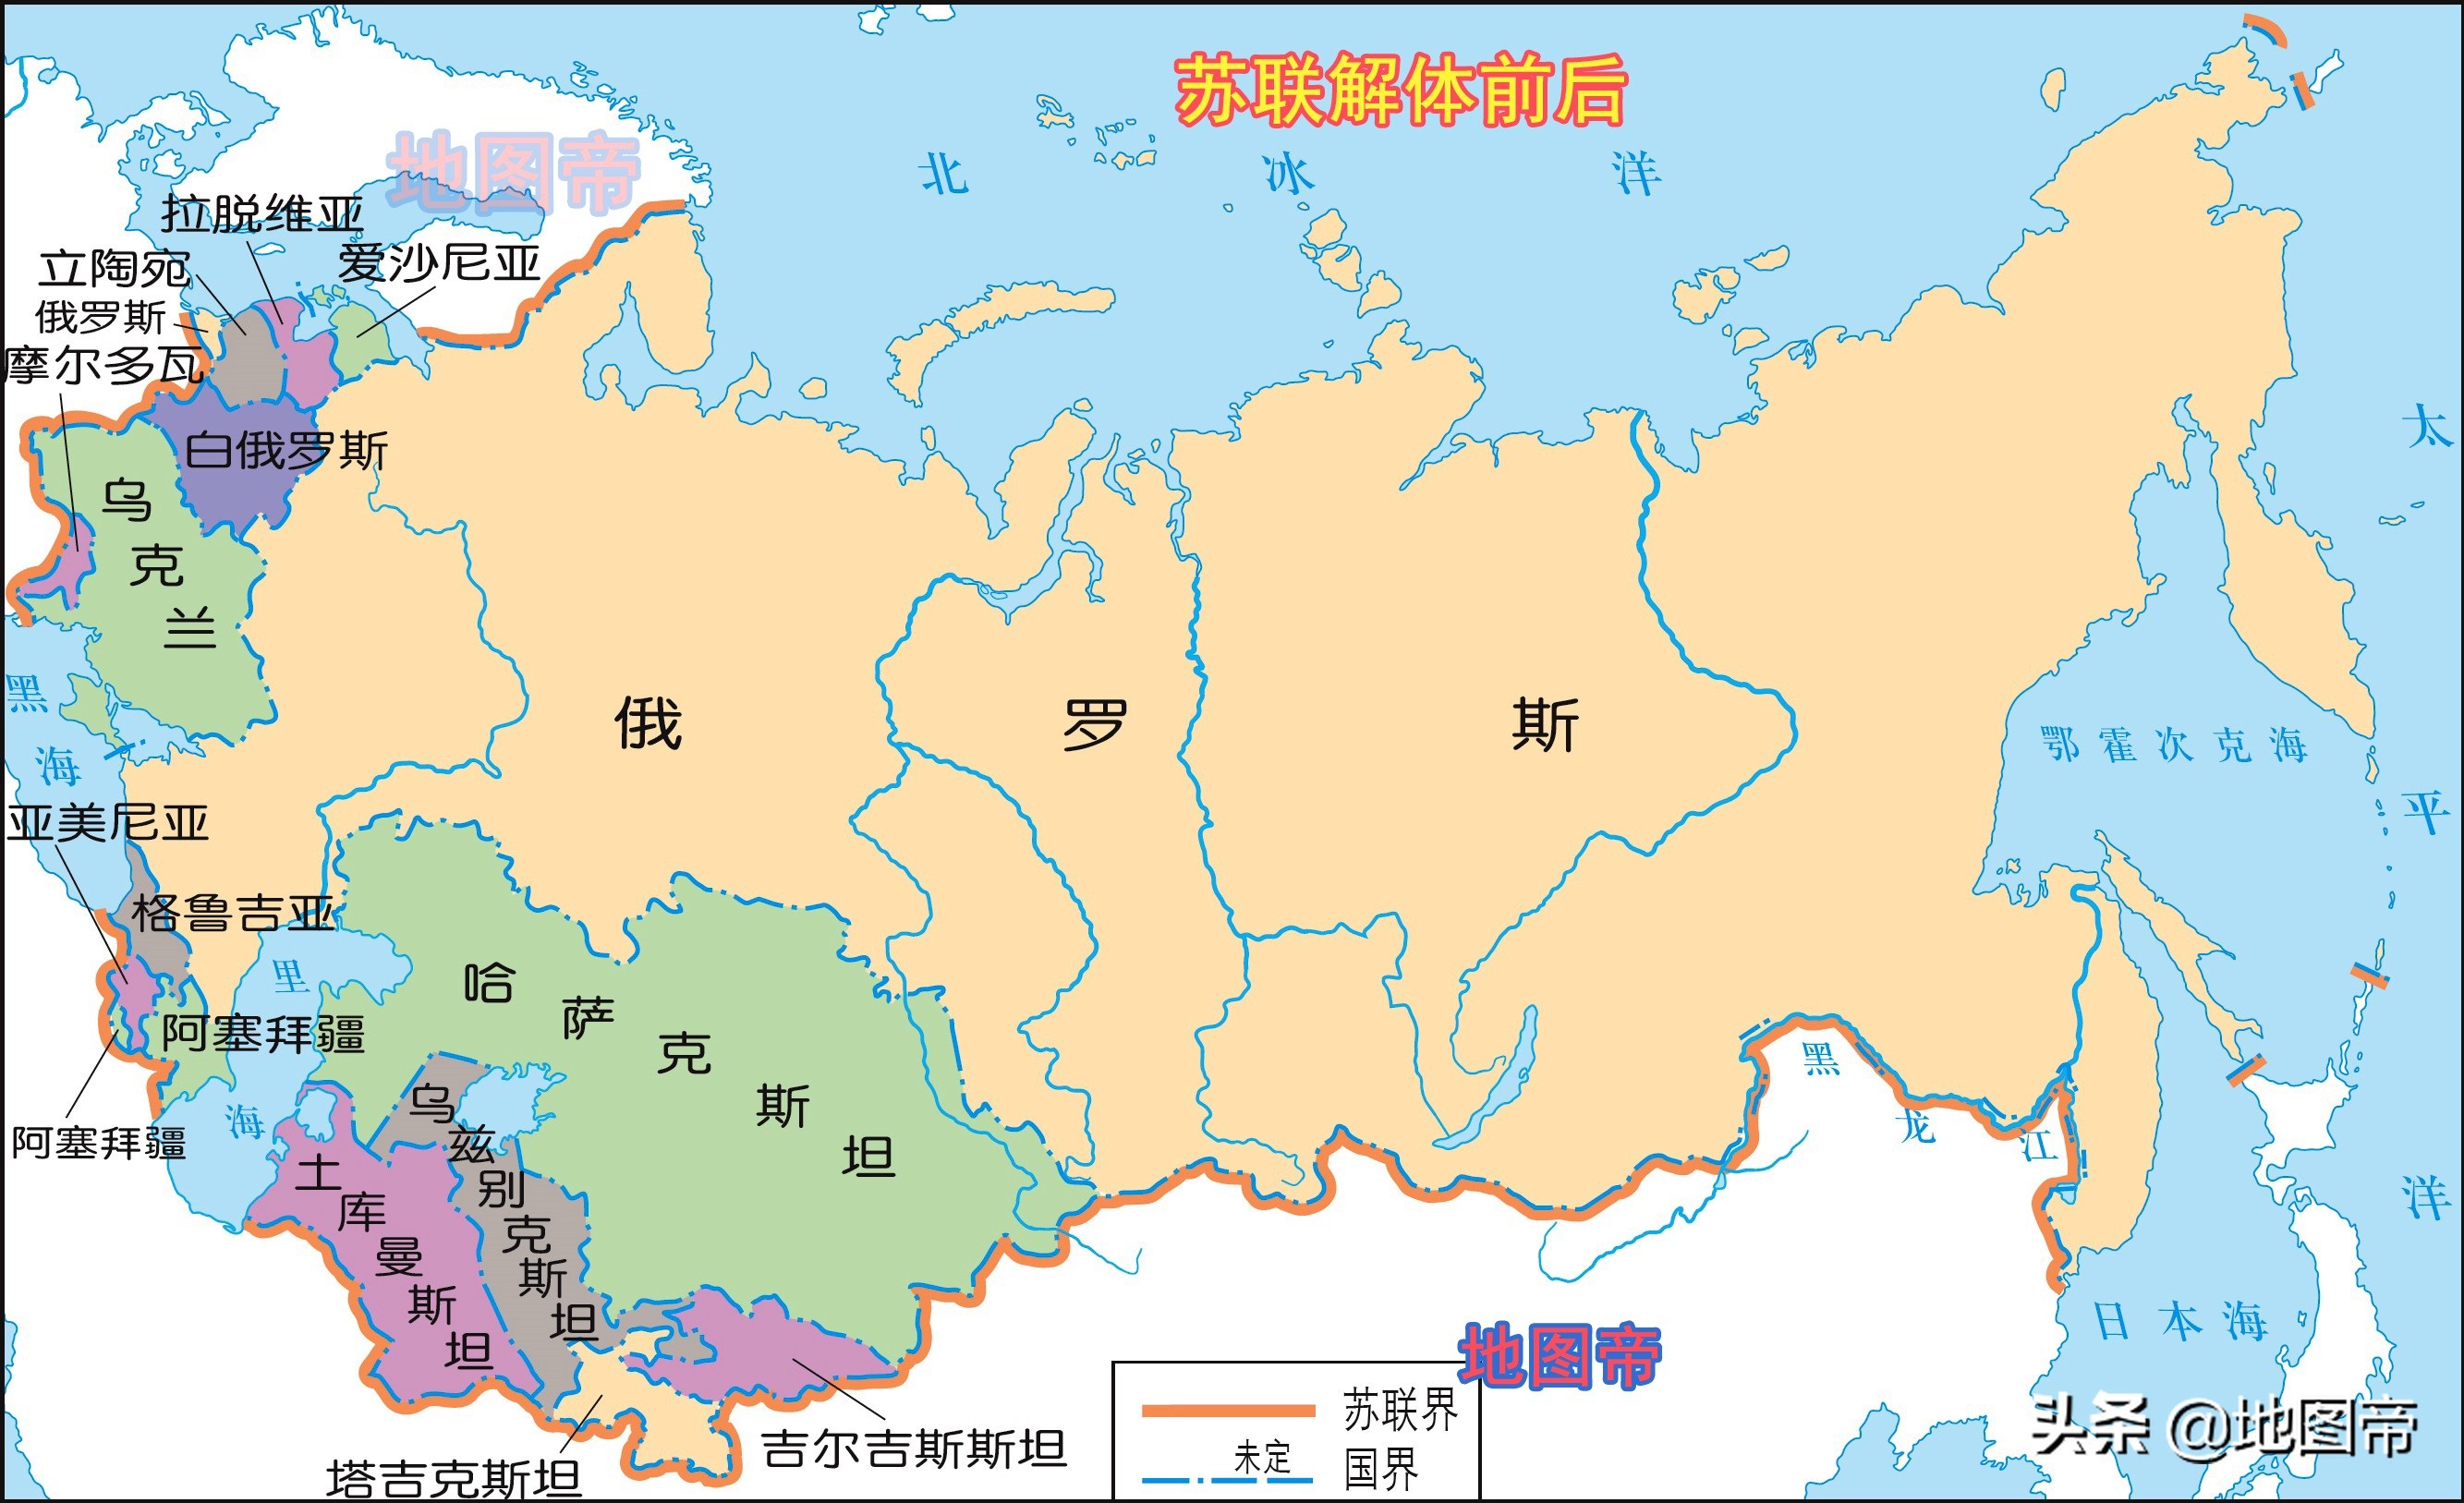 1922年,俄罗斯联邦,外高加索联邦,乌克兰,白俄罗斯成立苏联(后扩至15